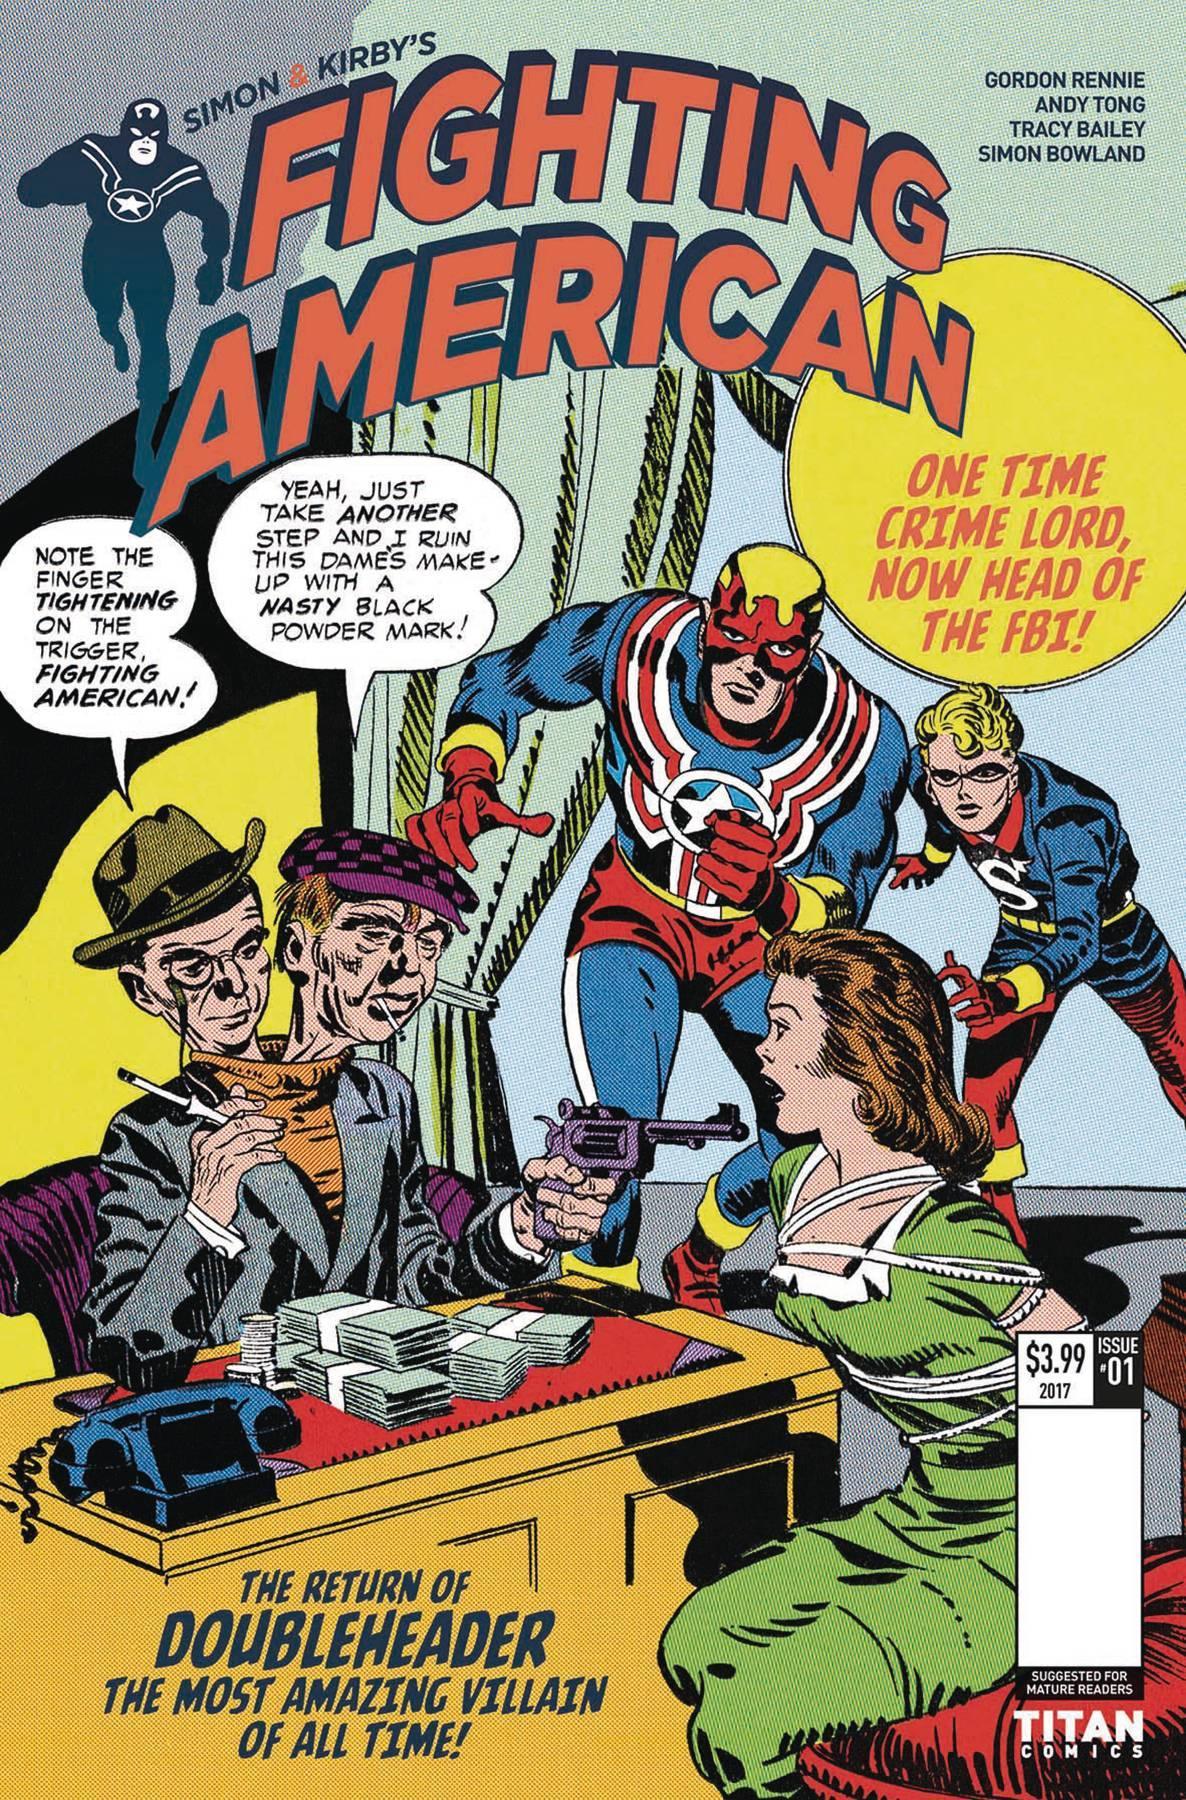 FIGHTING AMERICAN TIES THAT BIND #2 CVR B KIRBY - Kings Comics